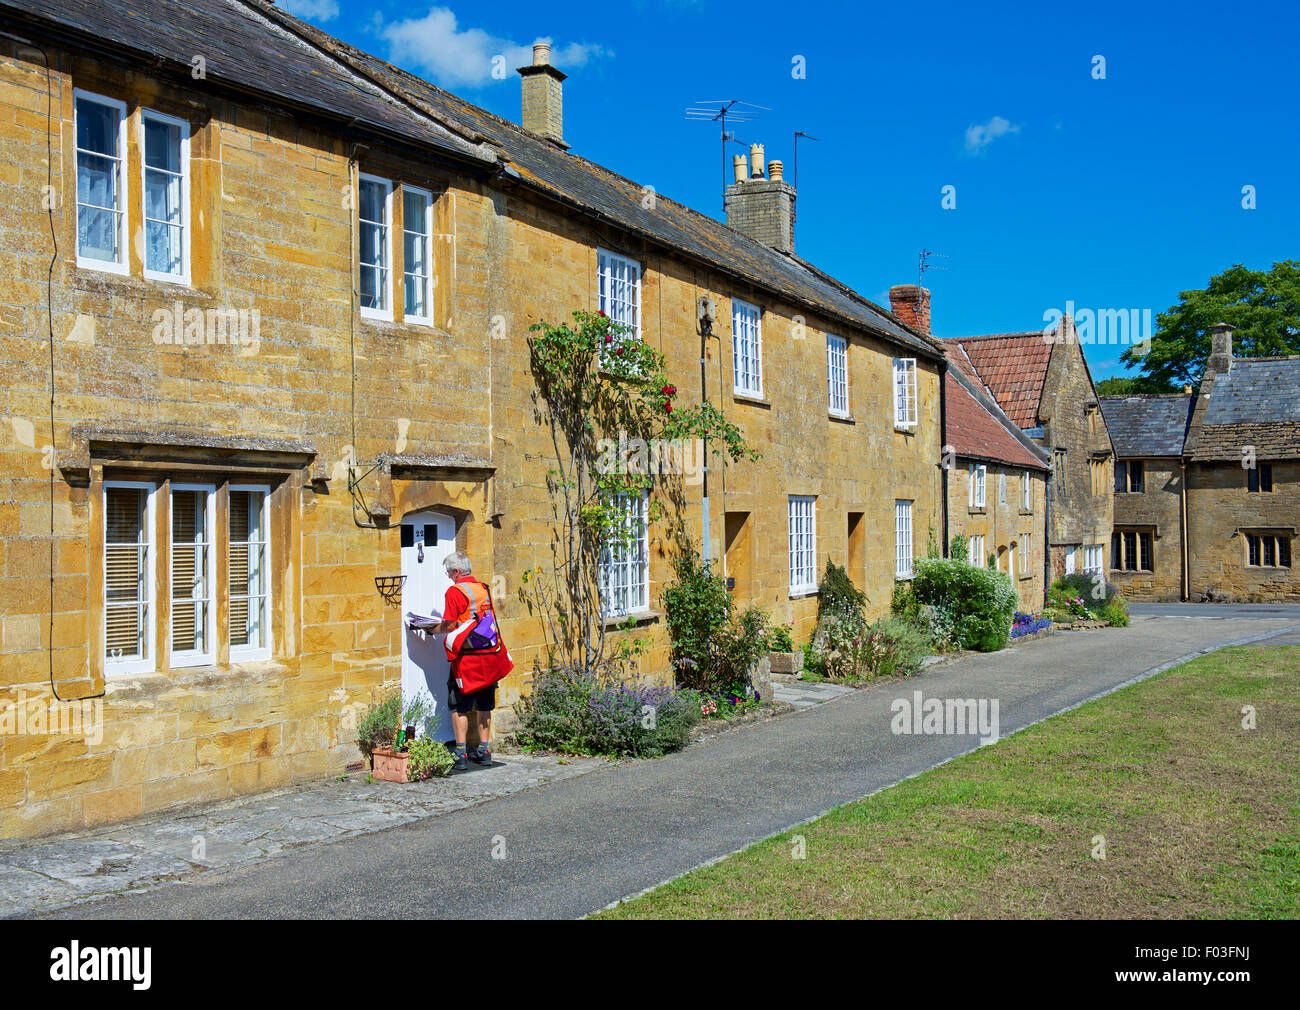 Facteur de distribuer les lettres à cottages dans le village de Montacute, Somerset, England UK Banque D'Images